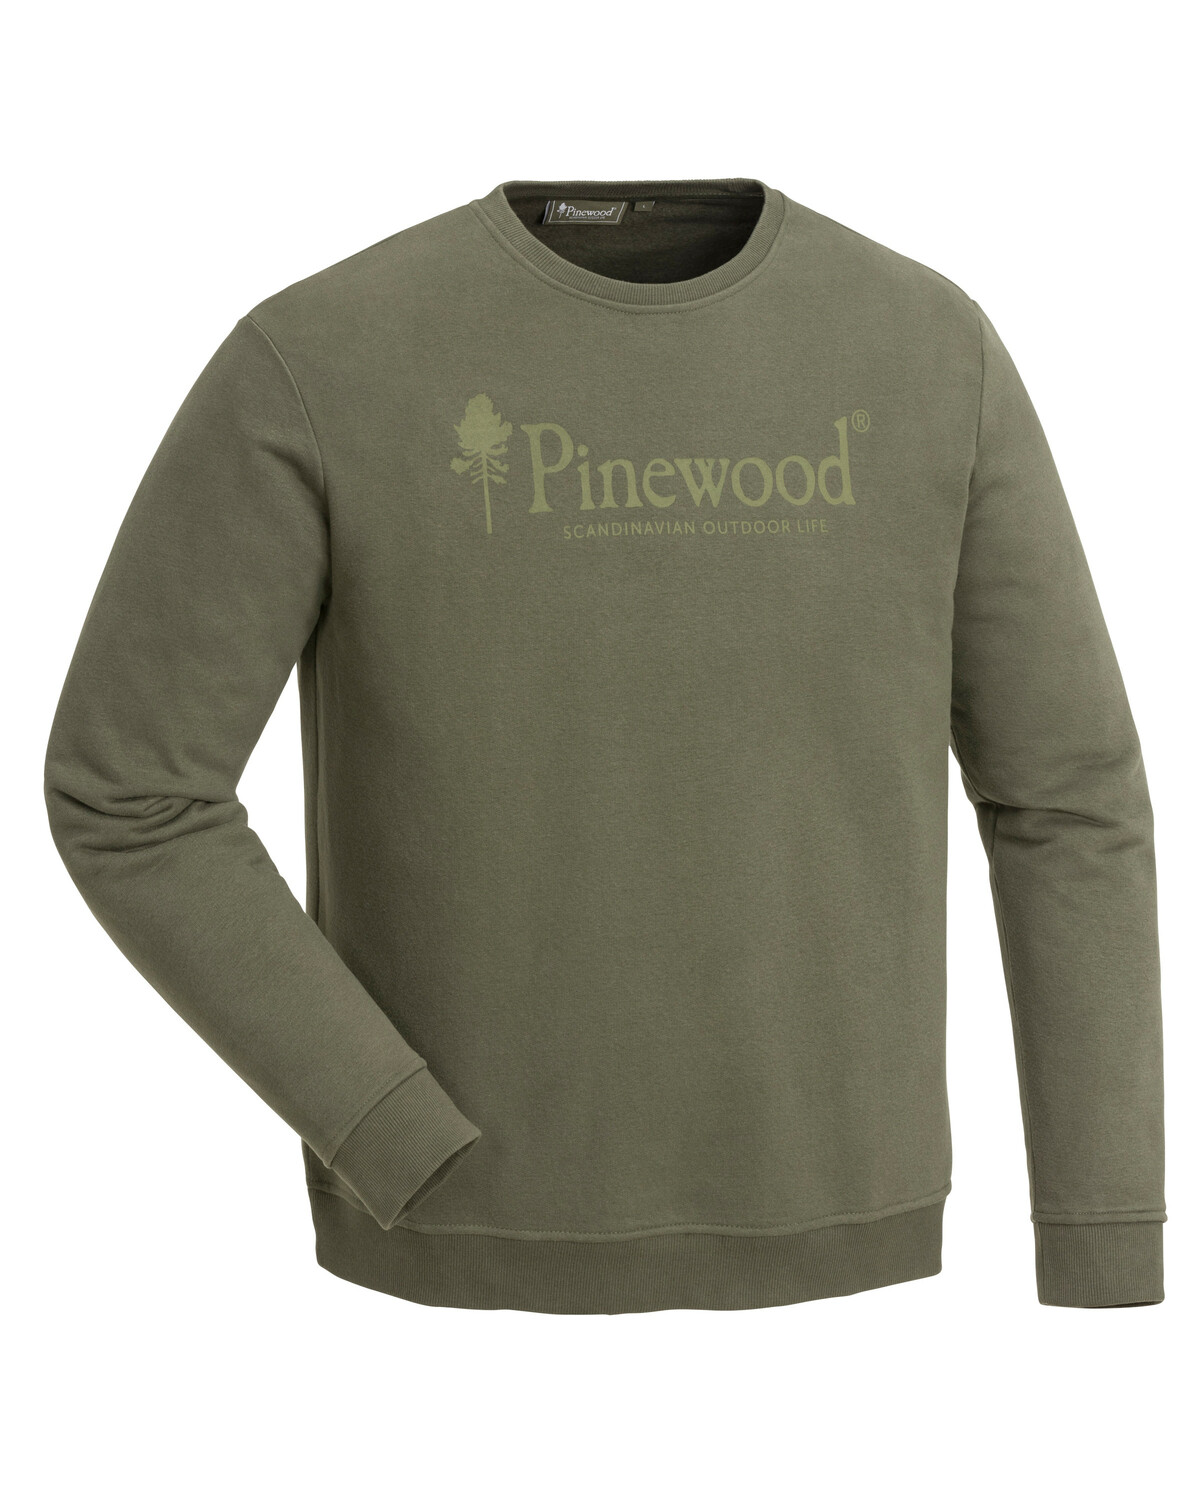 Свитер SUNNARYD Pinewood 5778-100